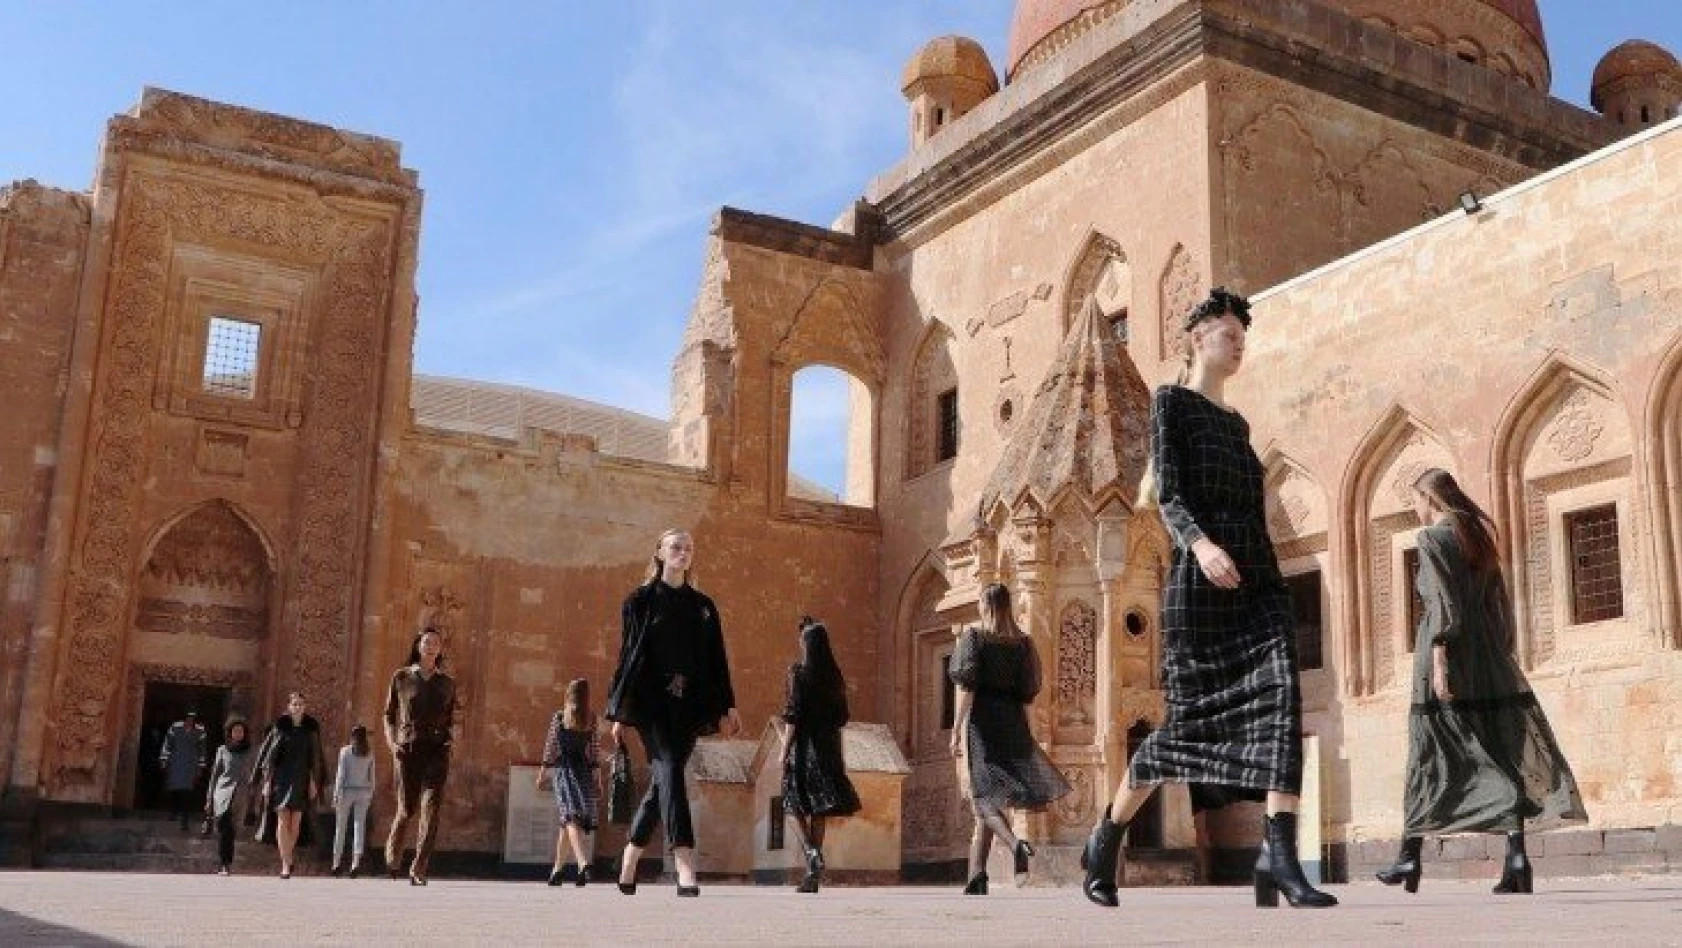 Tarihi İshak Paşa Sarayı, kapılarını modaya açtı